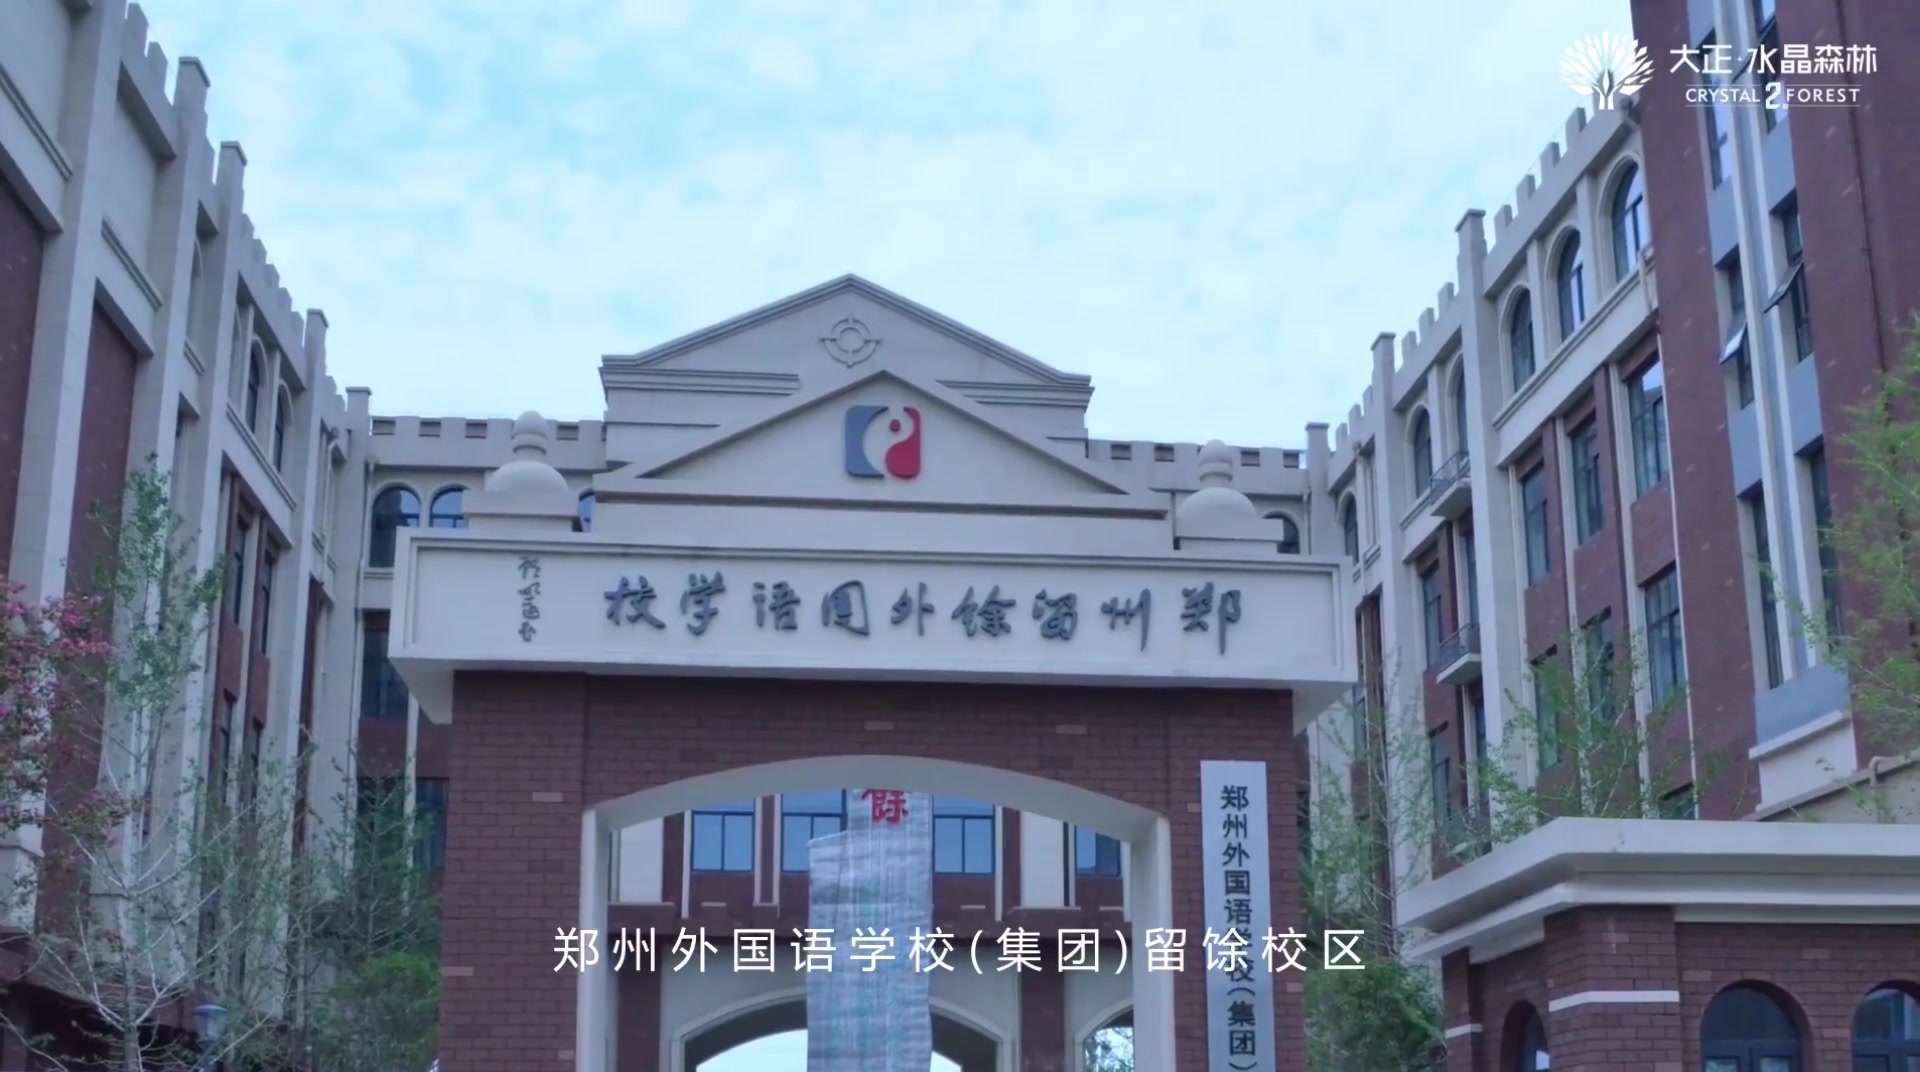 郑州外国语留馀校区官方视频来喽！#大正·水晶森林